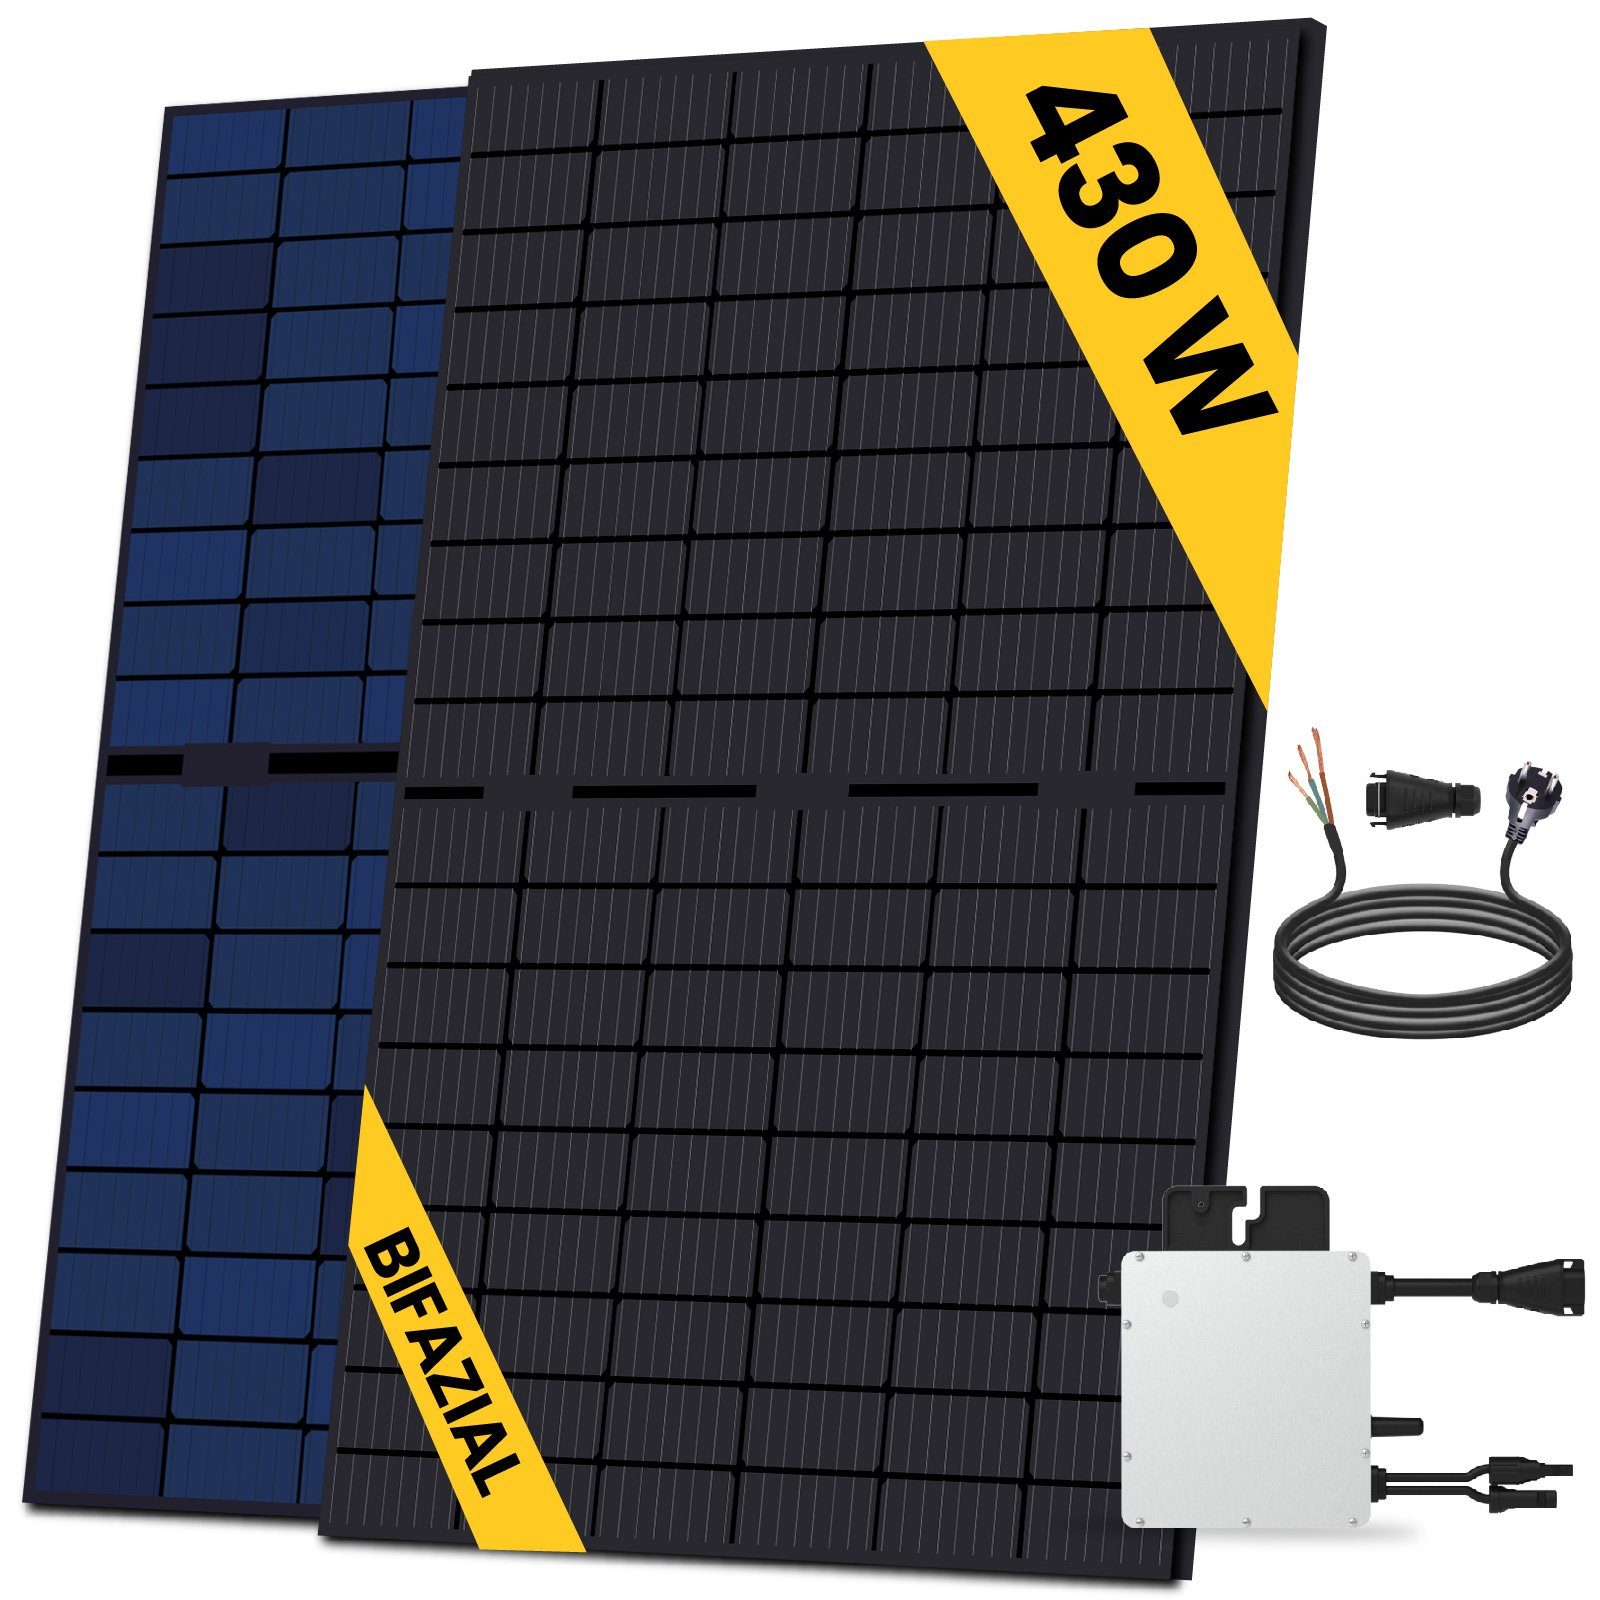 SOLAR-HOOK etm Solaranlage 430W Bifazial Balkonkraftwerk Komplettset, mit HMS-400-1T Wechselrichter und 10m Schukostecker